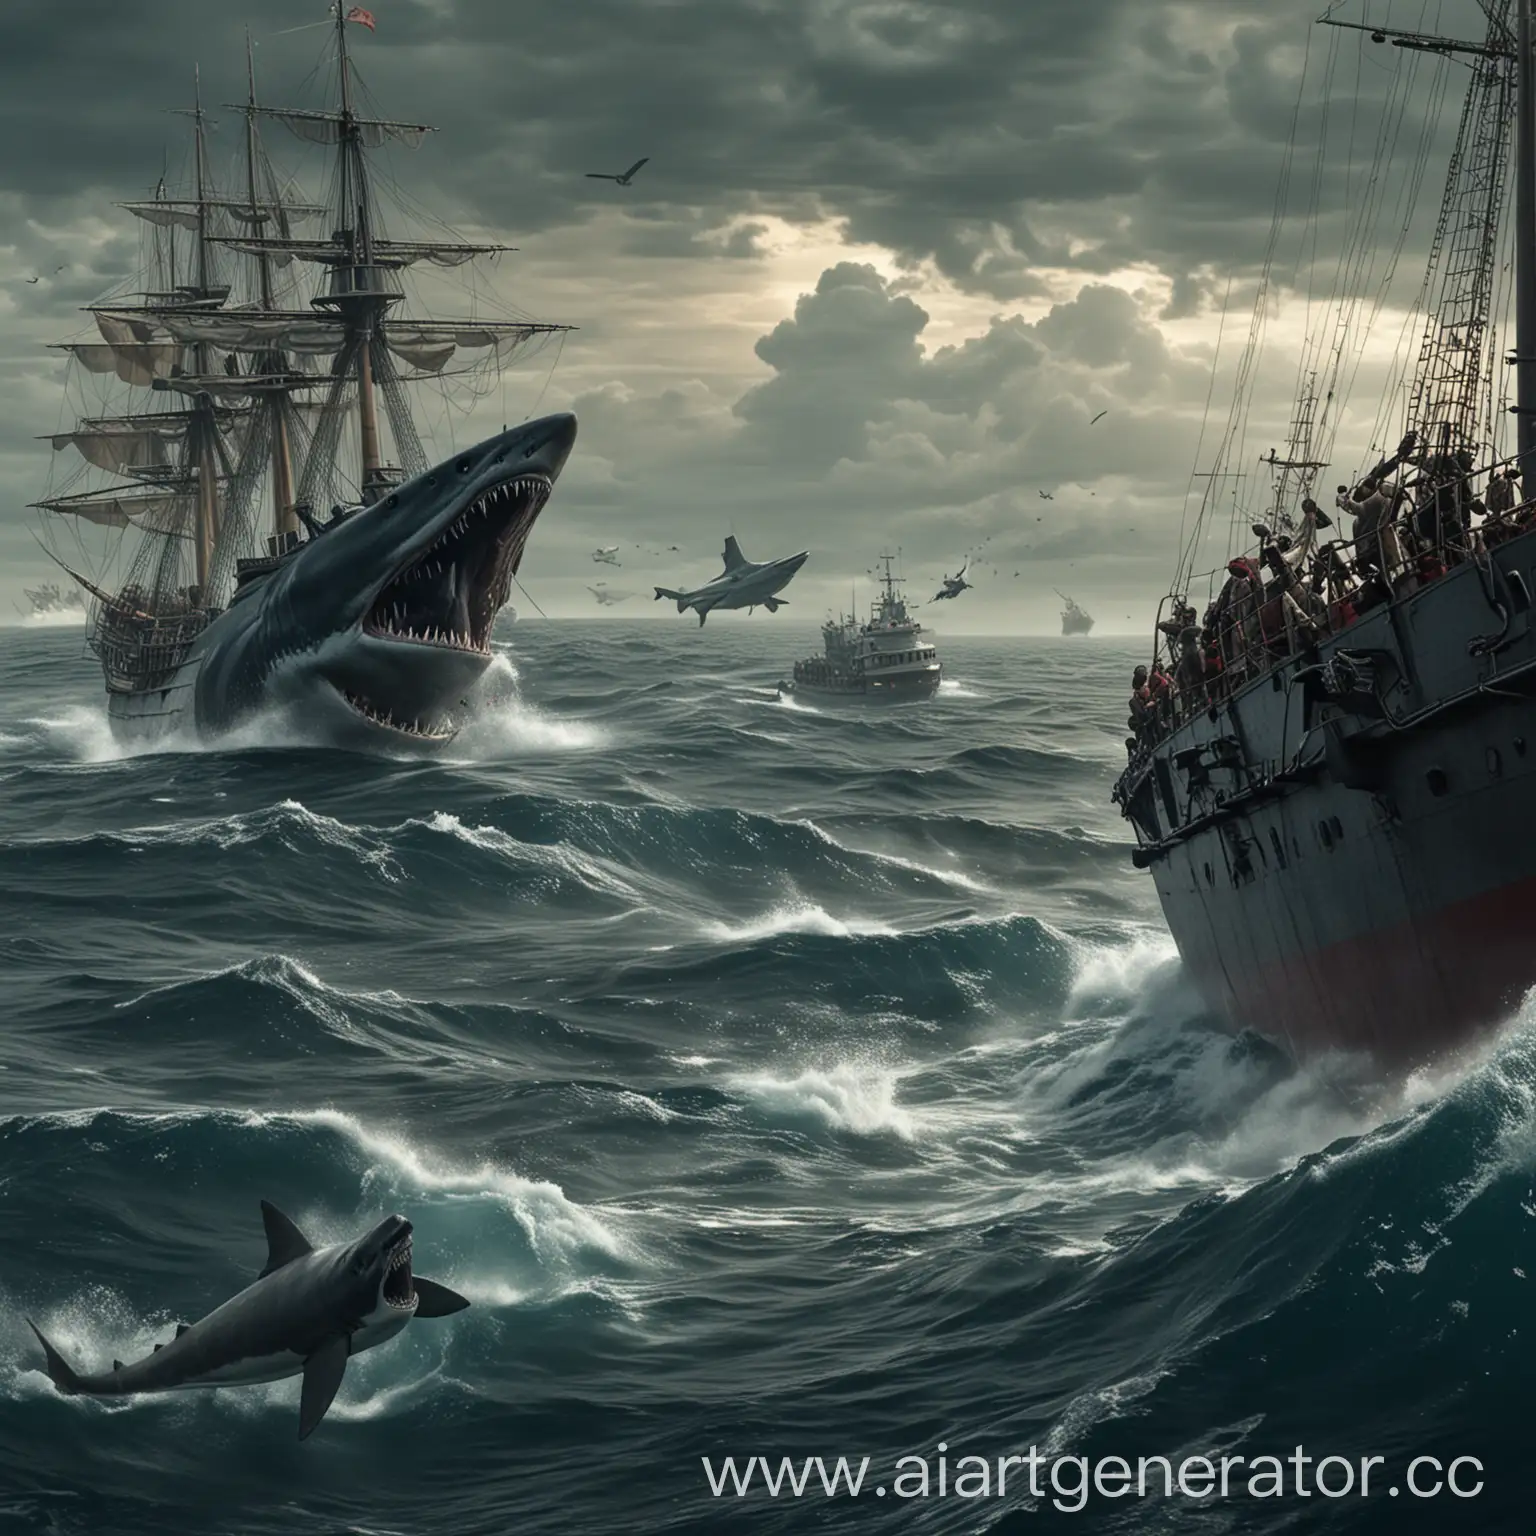 Megalodon-Attacks-Ship-in-Epic-Cruiser-Scene